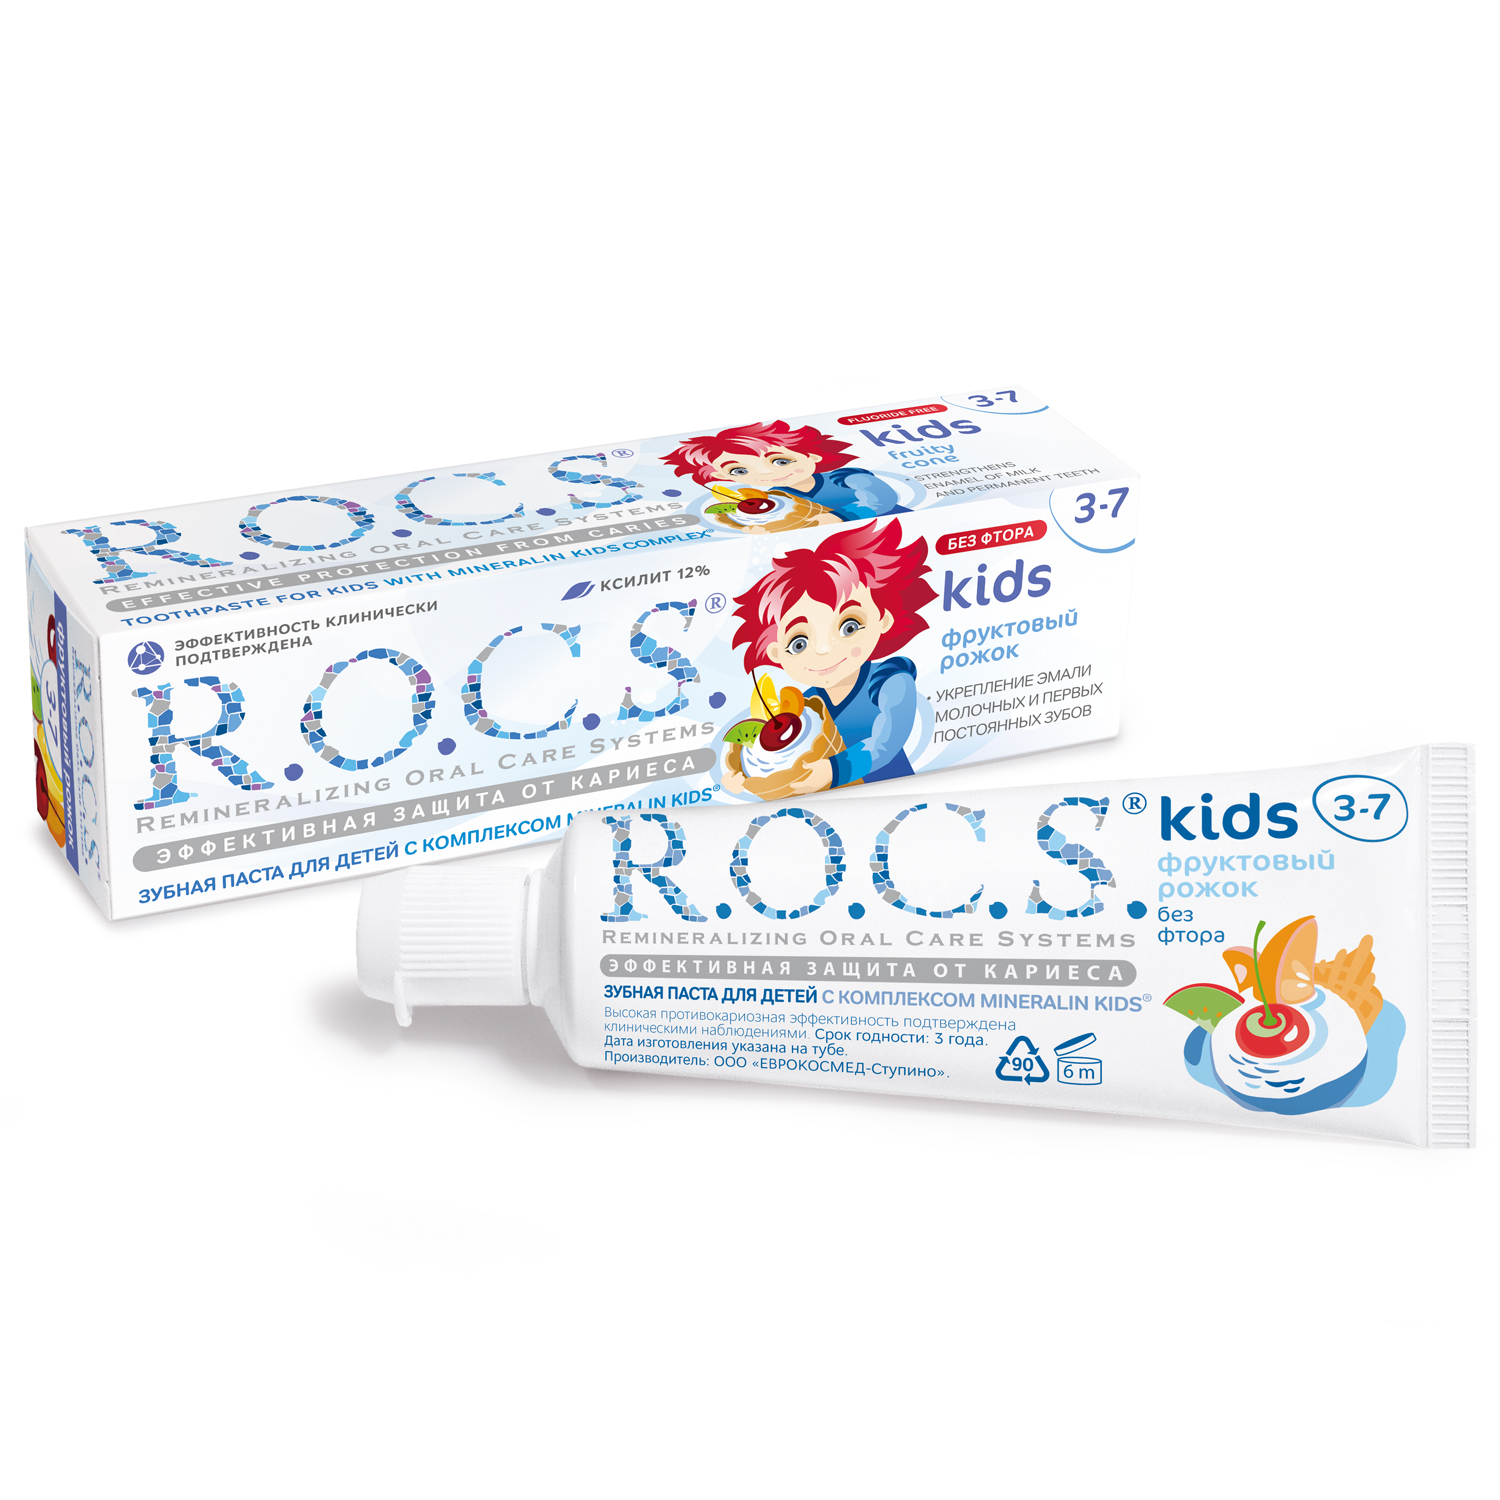 Зубная паста ROCS для детей фруктовый рожок без фтора 45 гр зубная паста r o c s kids фруктовый рожок без фтора 45 гр